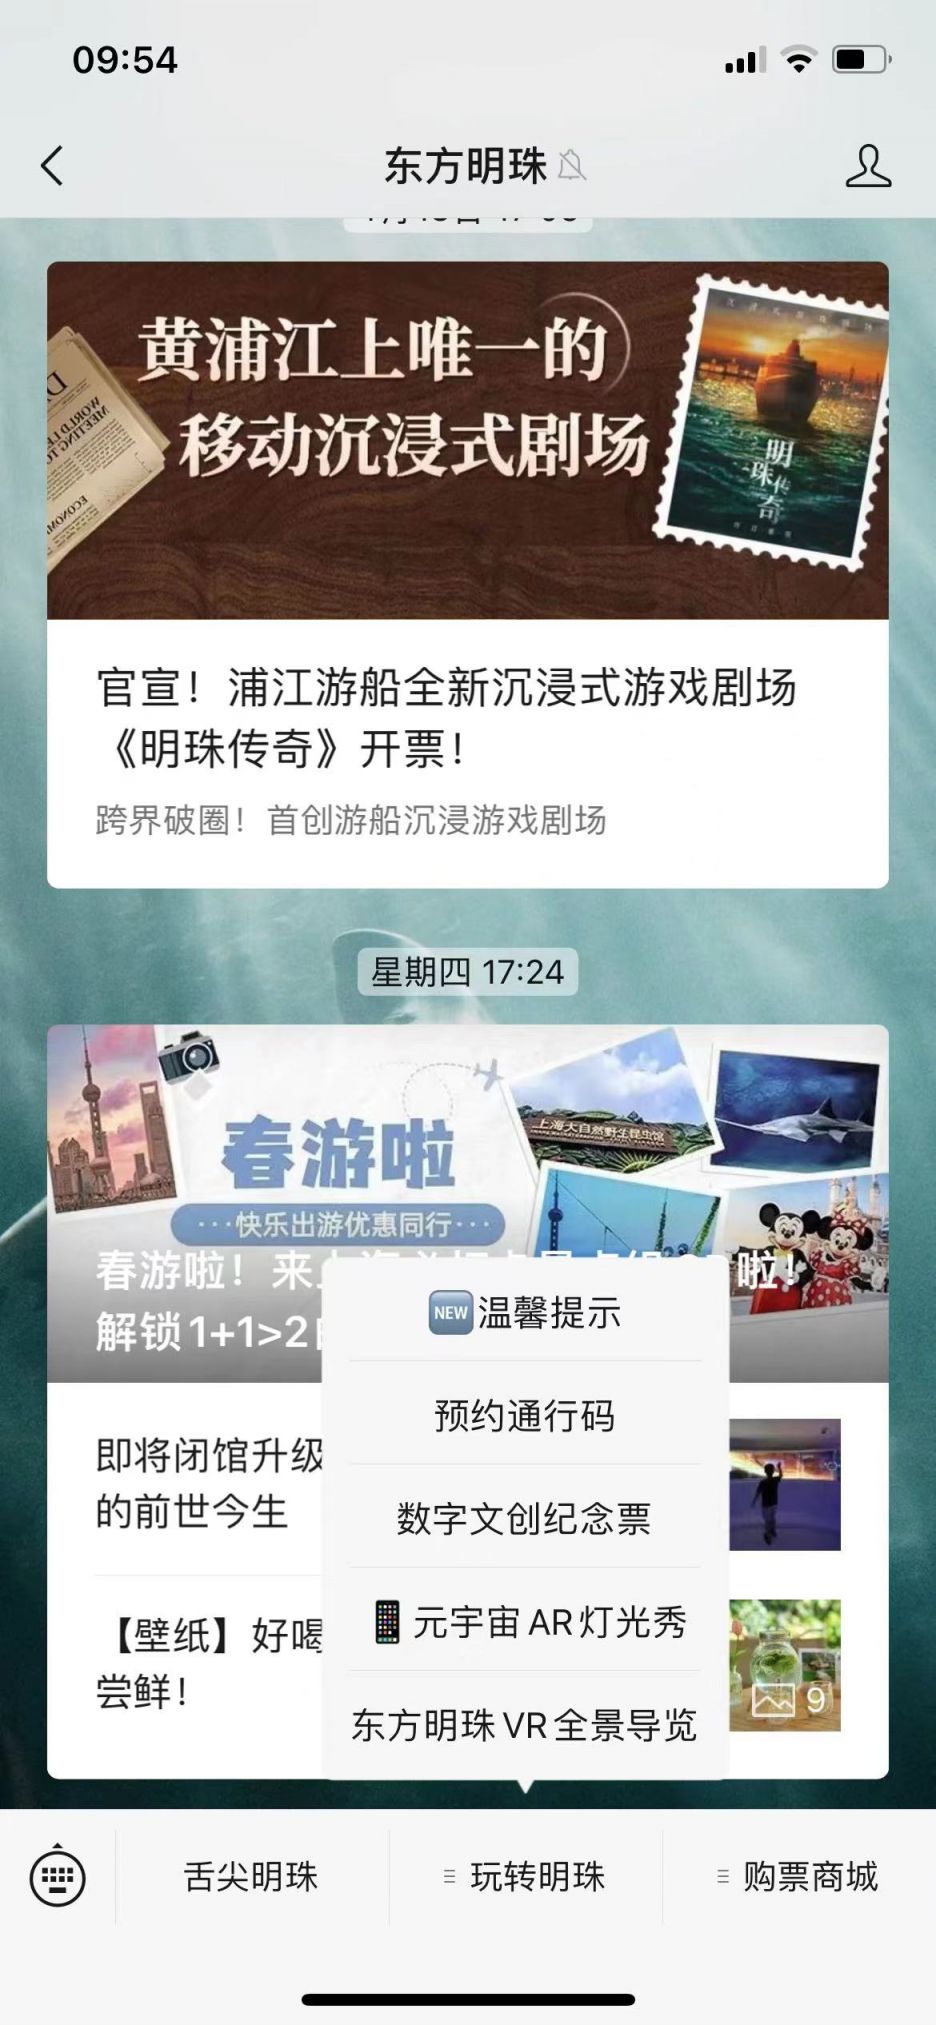 上海东方明珠门票预约官网入口及操作流程